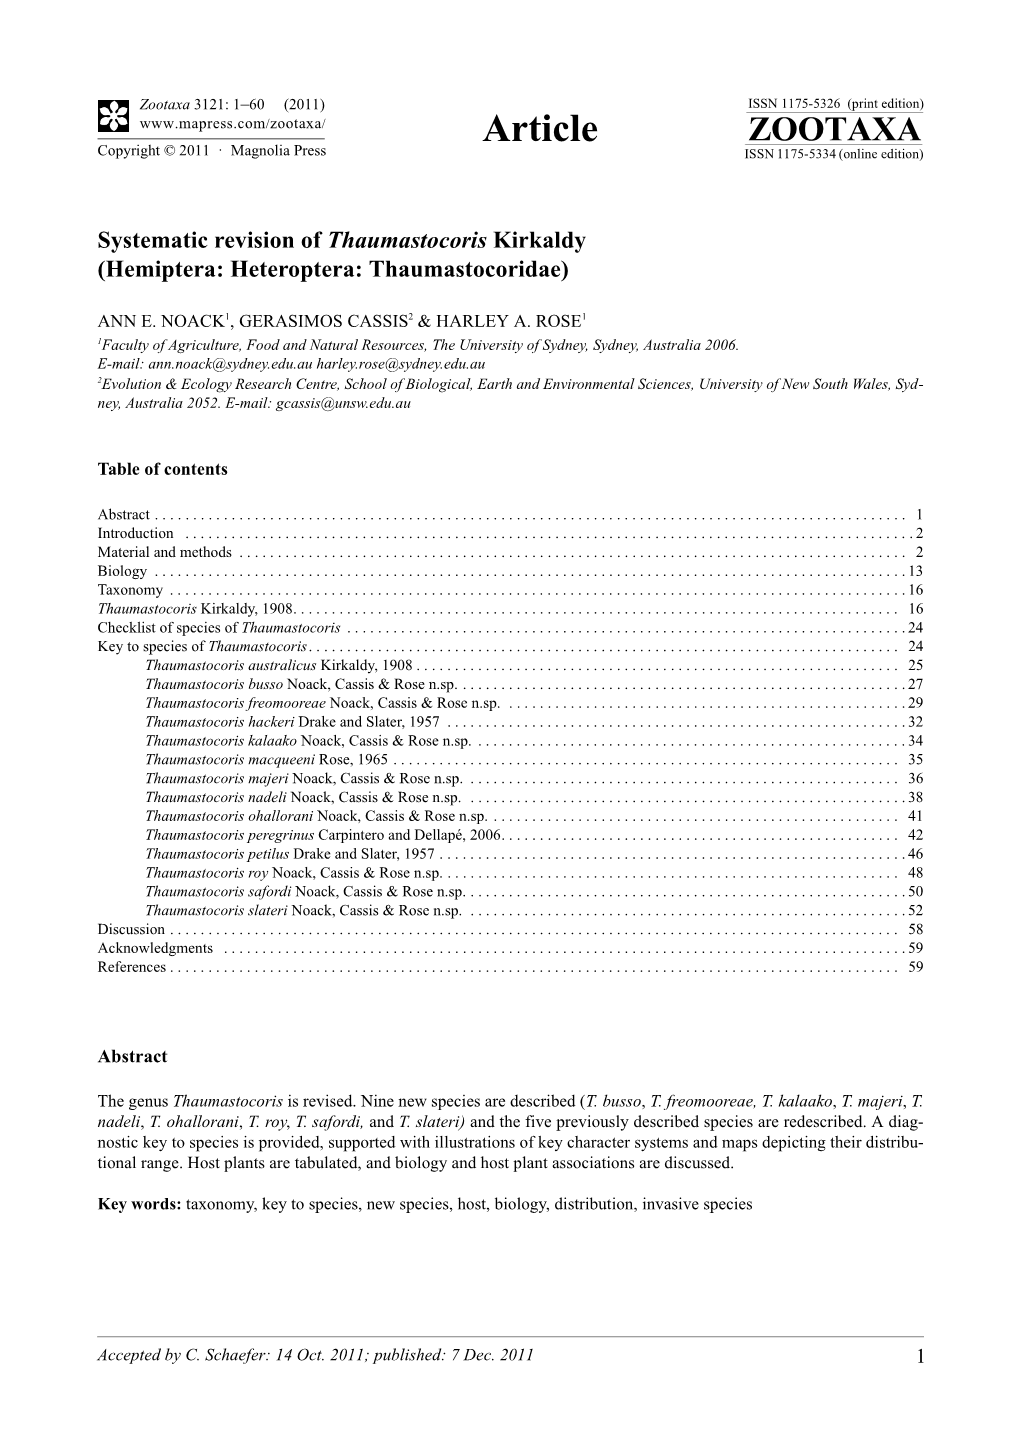 Systematic Revision of Thaumastocoris Kirkaldy (Hemiptera: Heteroptera: Thaumastocoridae)